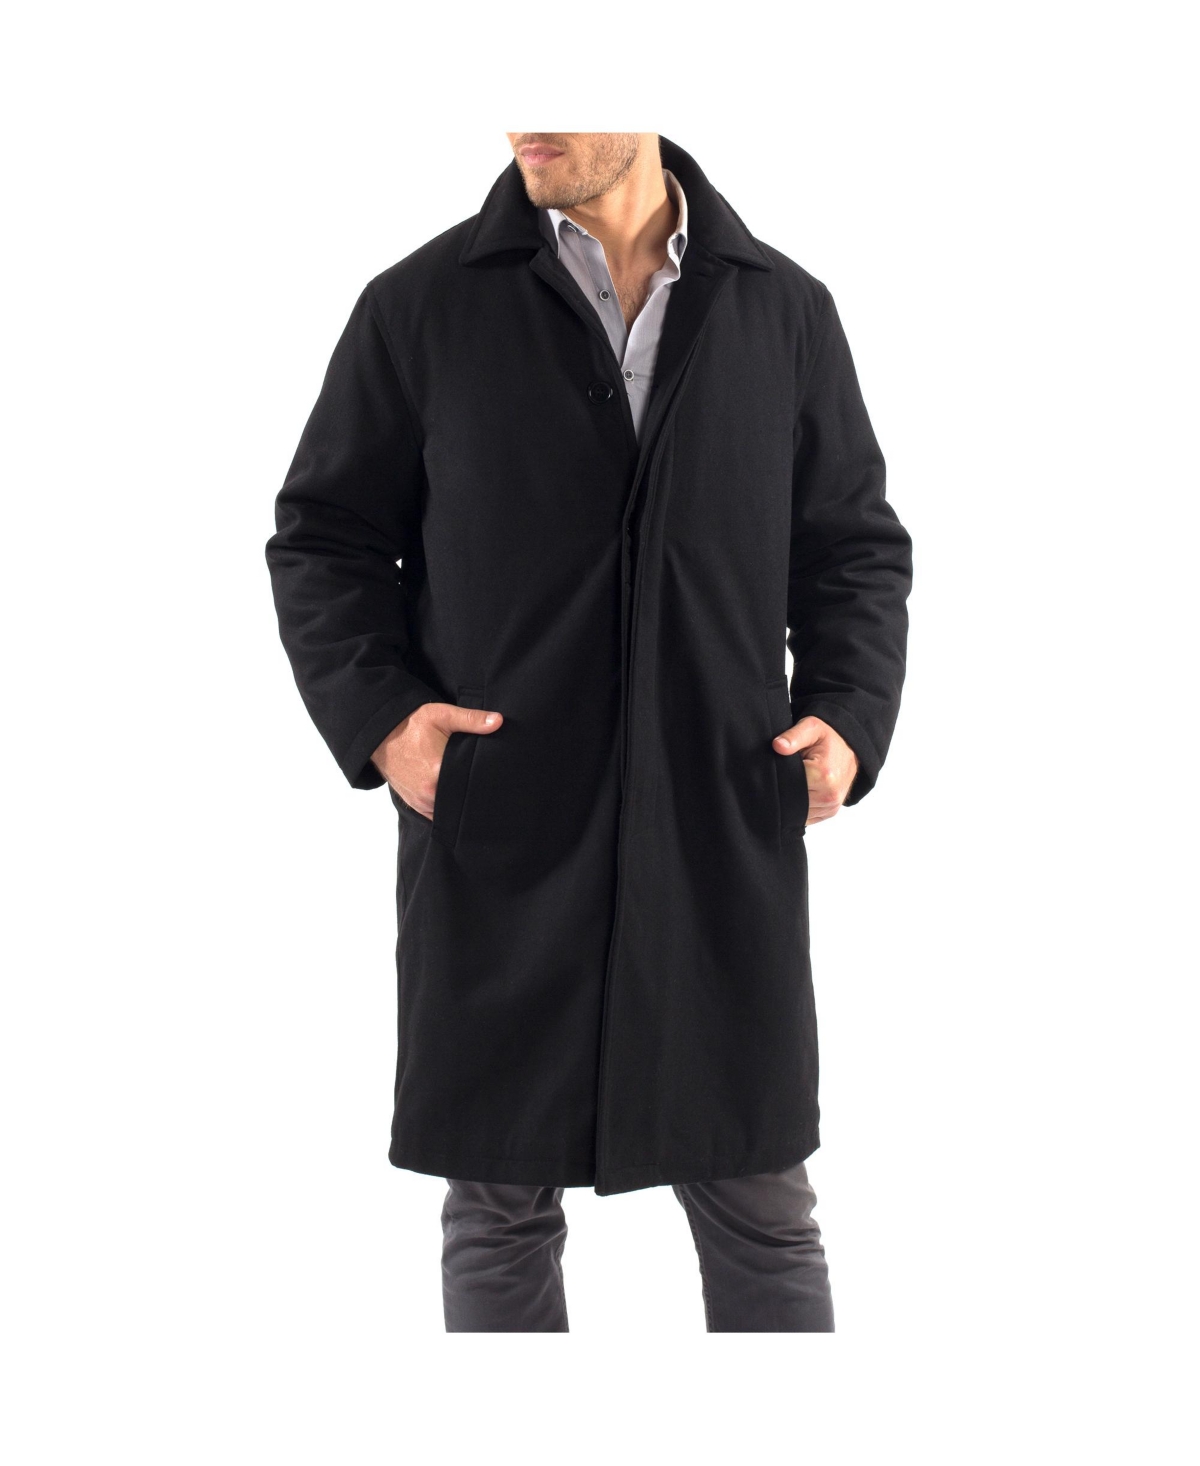 Men's Zach Knee Length Jacket Top Coat Trench Wool Blend Overcoat - Gray